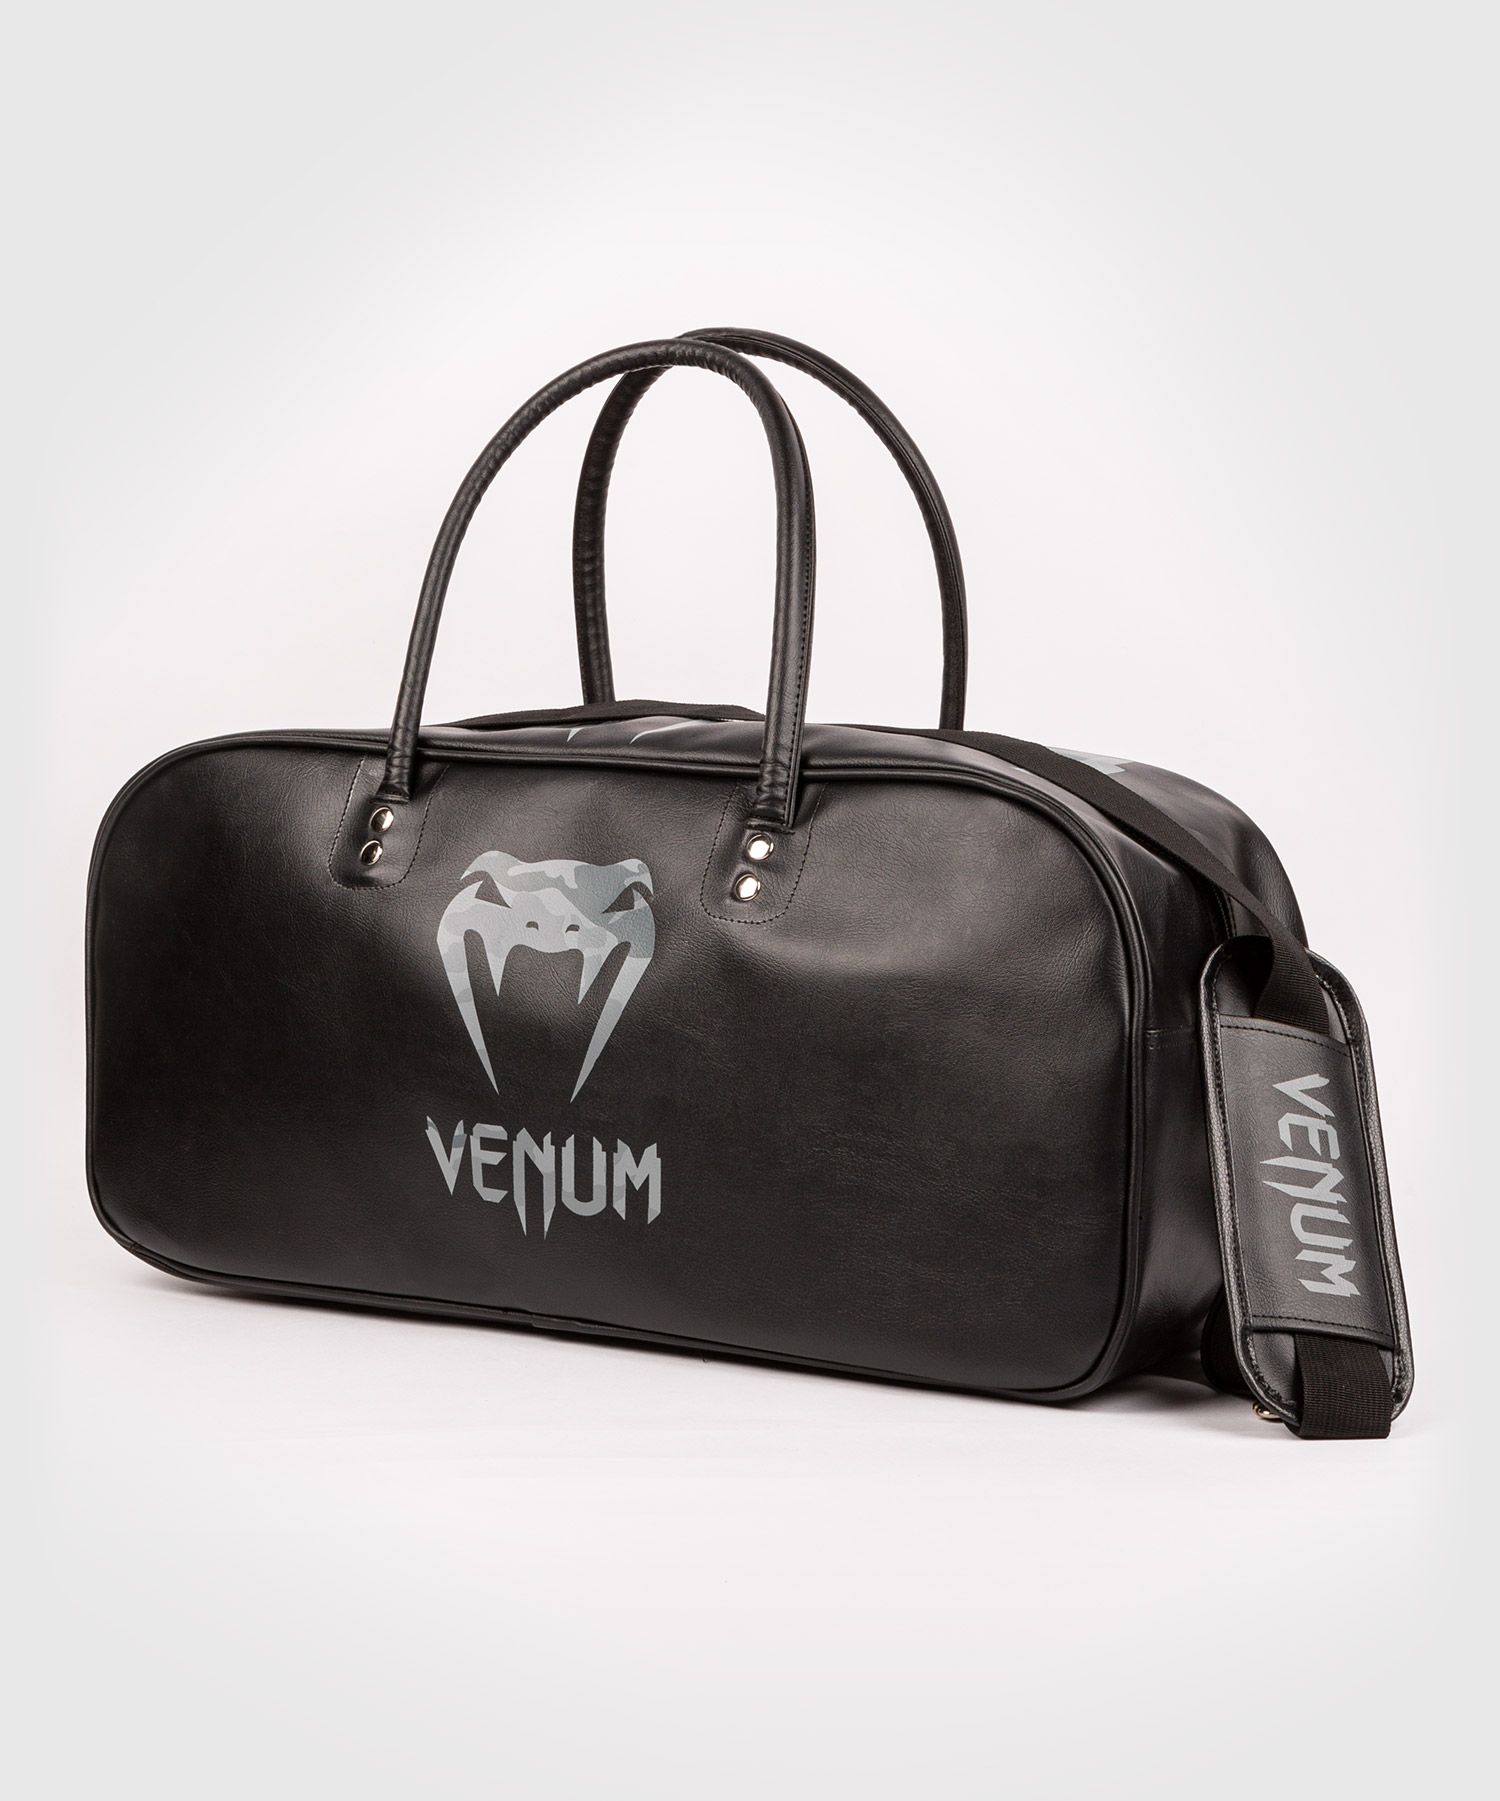 Sac de sport Venum Origins - Noir/Urban Camo - Grand modèle